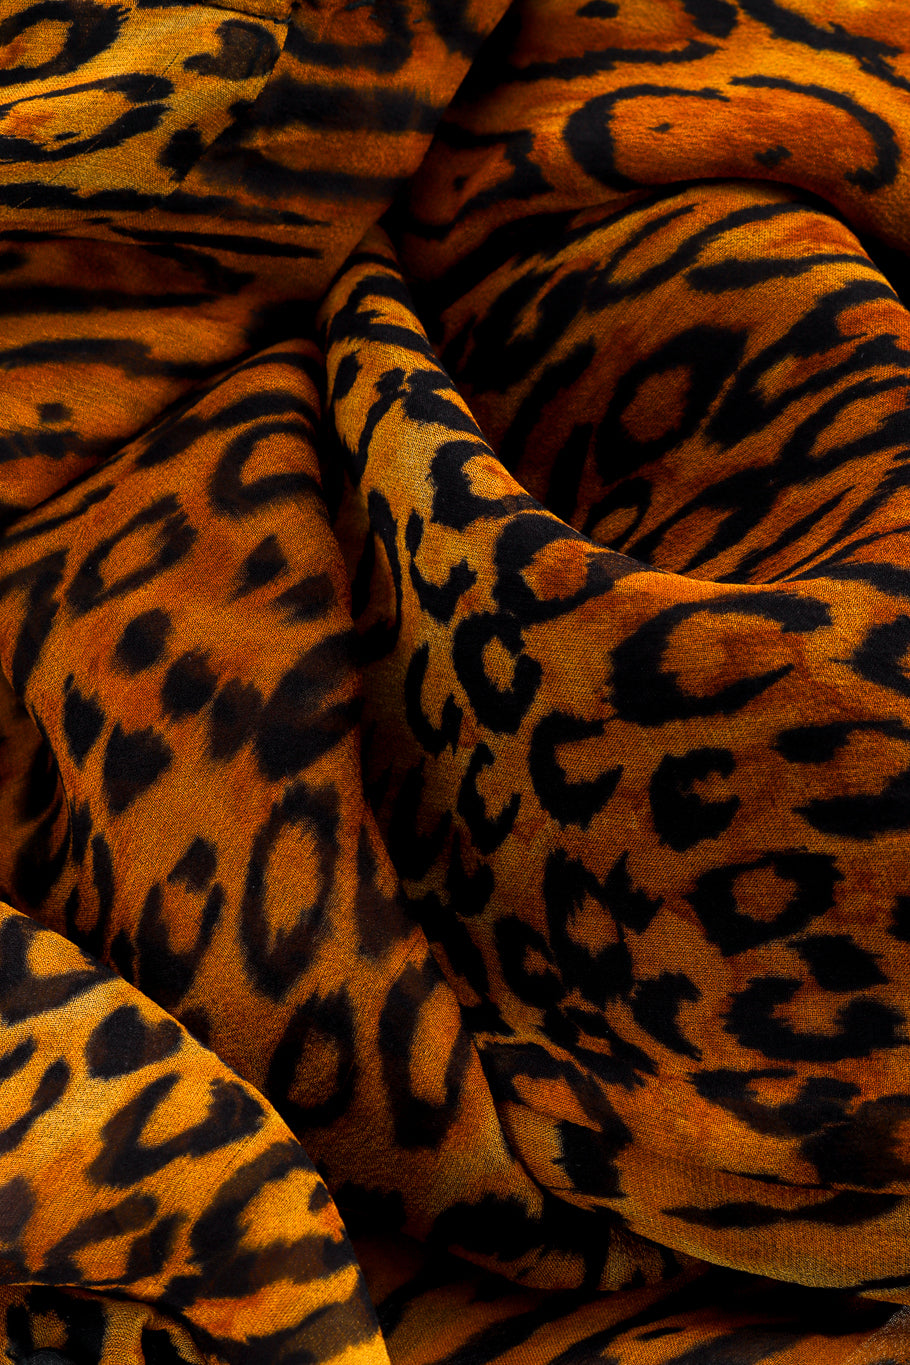 Vintage Oscar de la Renta Leopard Silk Jumpsuit fabric closeup @recessla